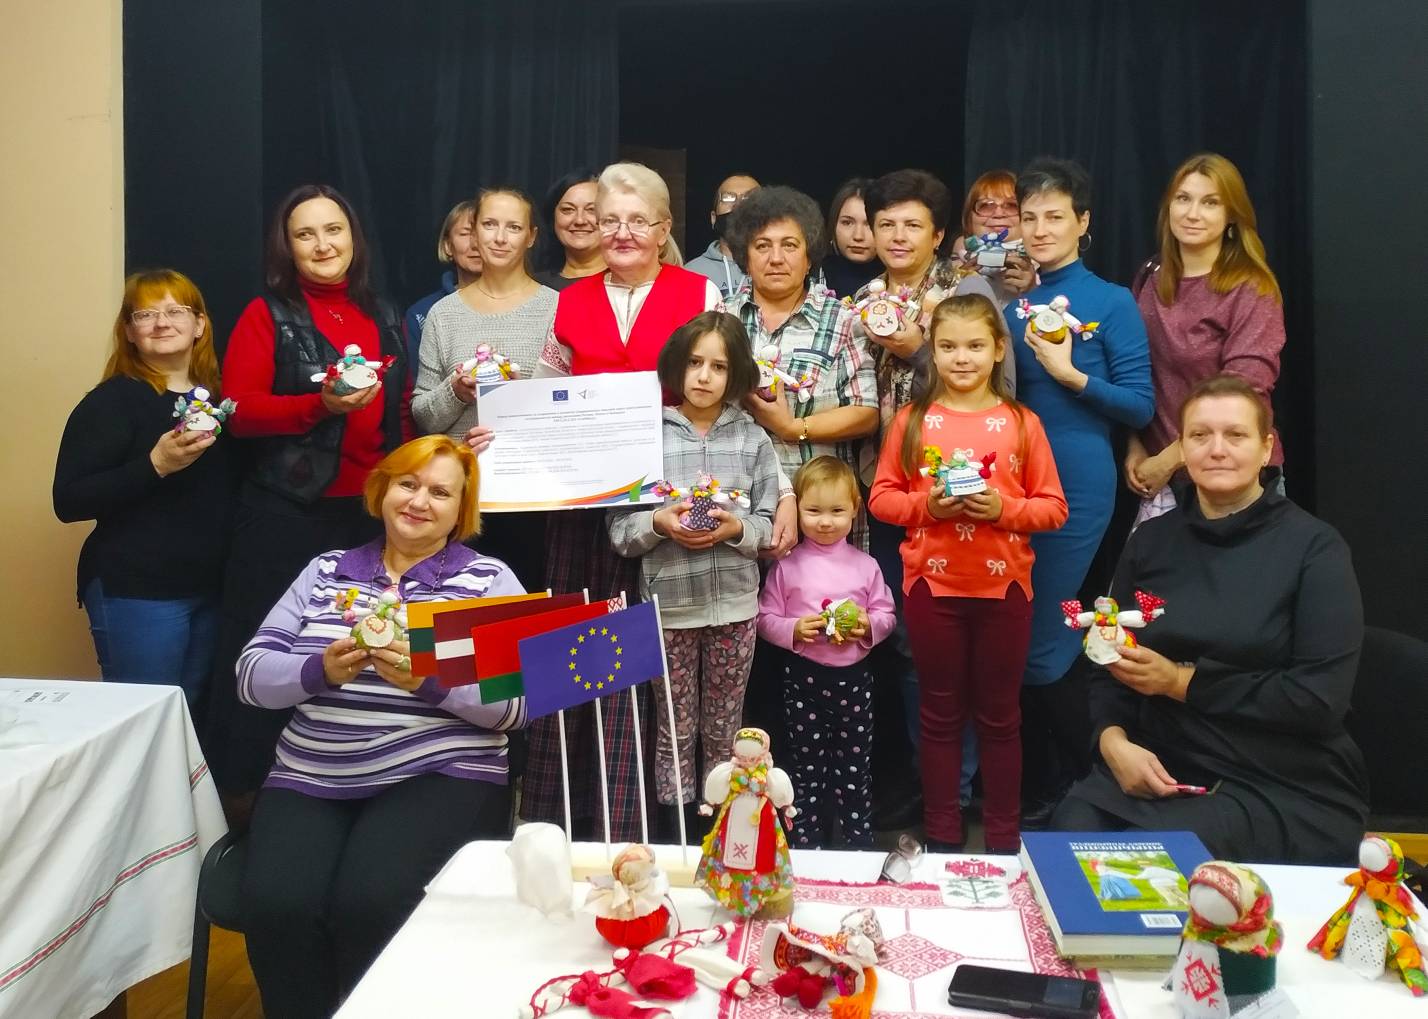 Центр ремесел и традиционной культуры города Новополоцка 2 октября 2021 года провел первое открытое занятие в рамках проекта 